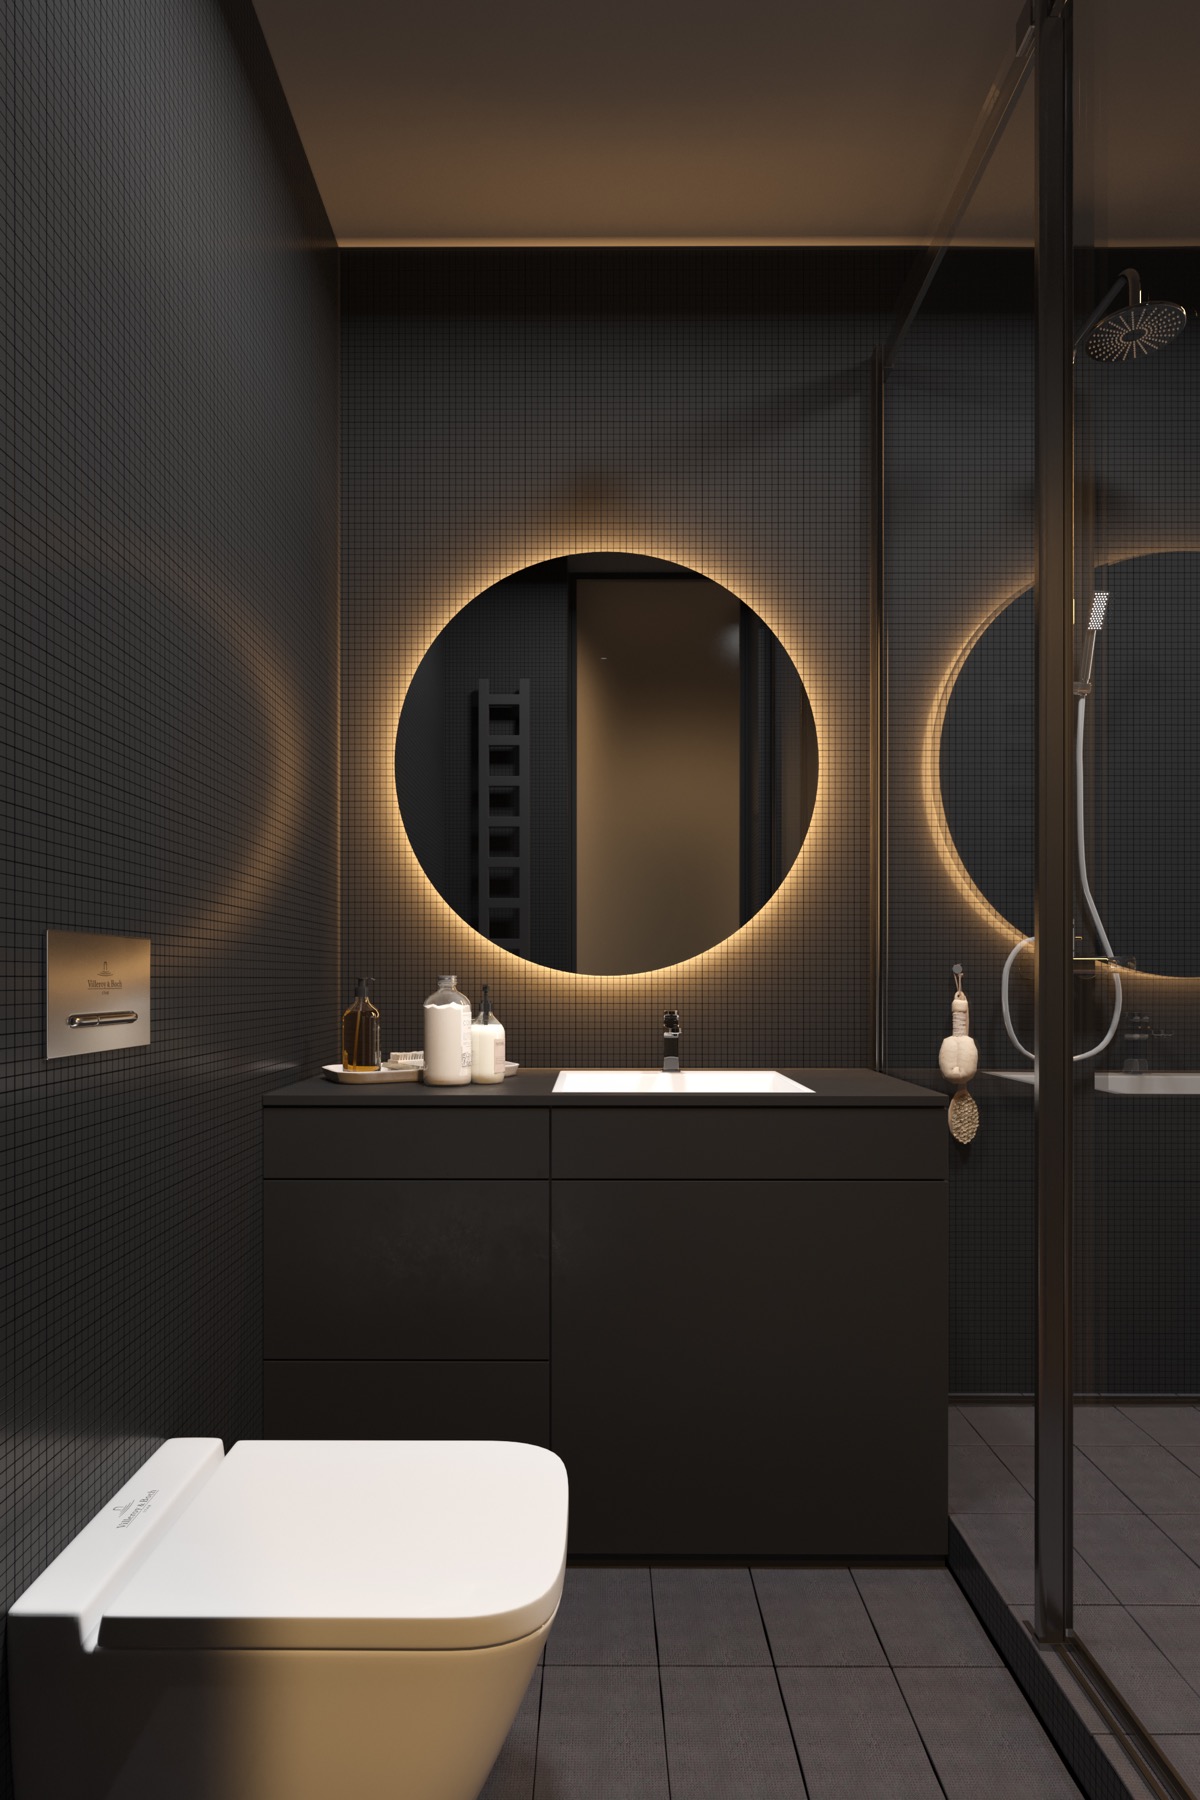 90后个性浴室，黑白格大秀时尚值 - Idea匠人设计效果图 - 躺平设计家